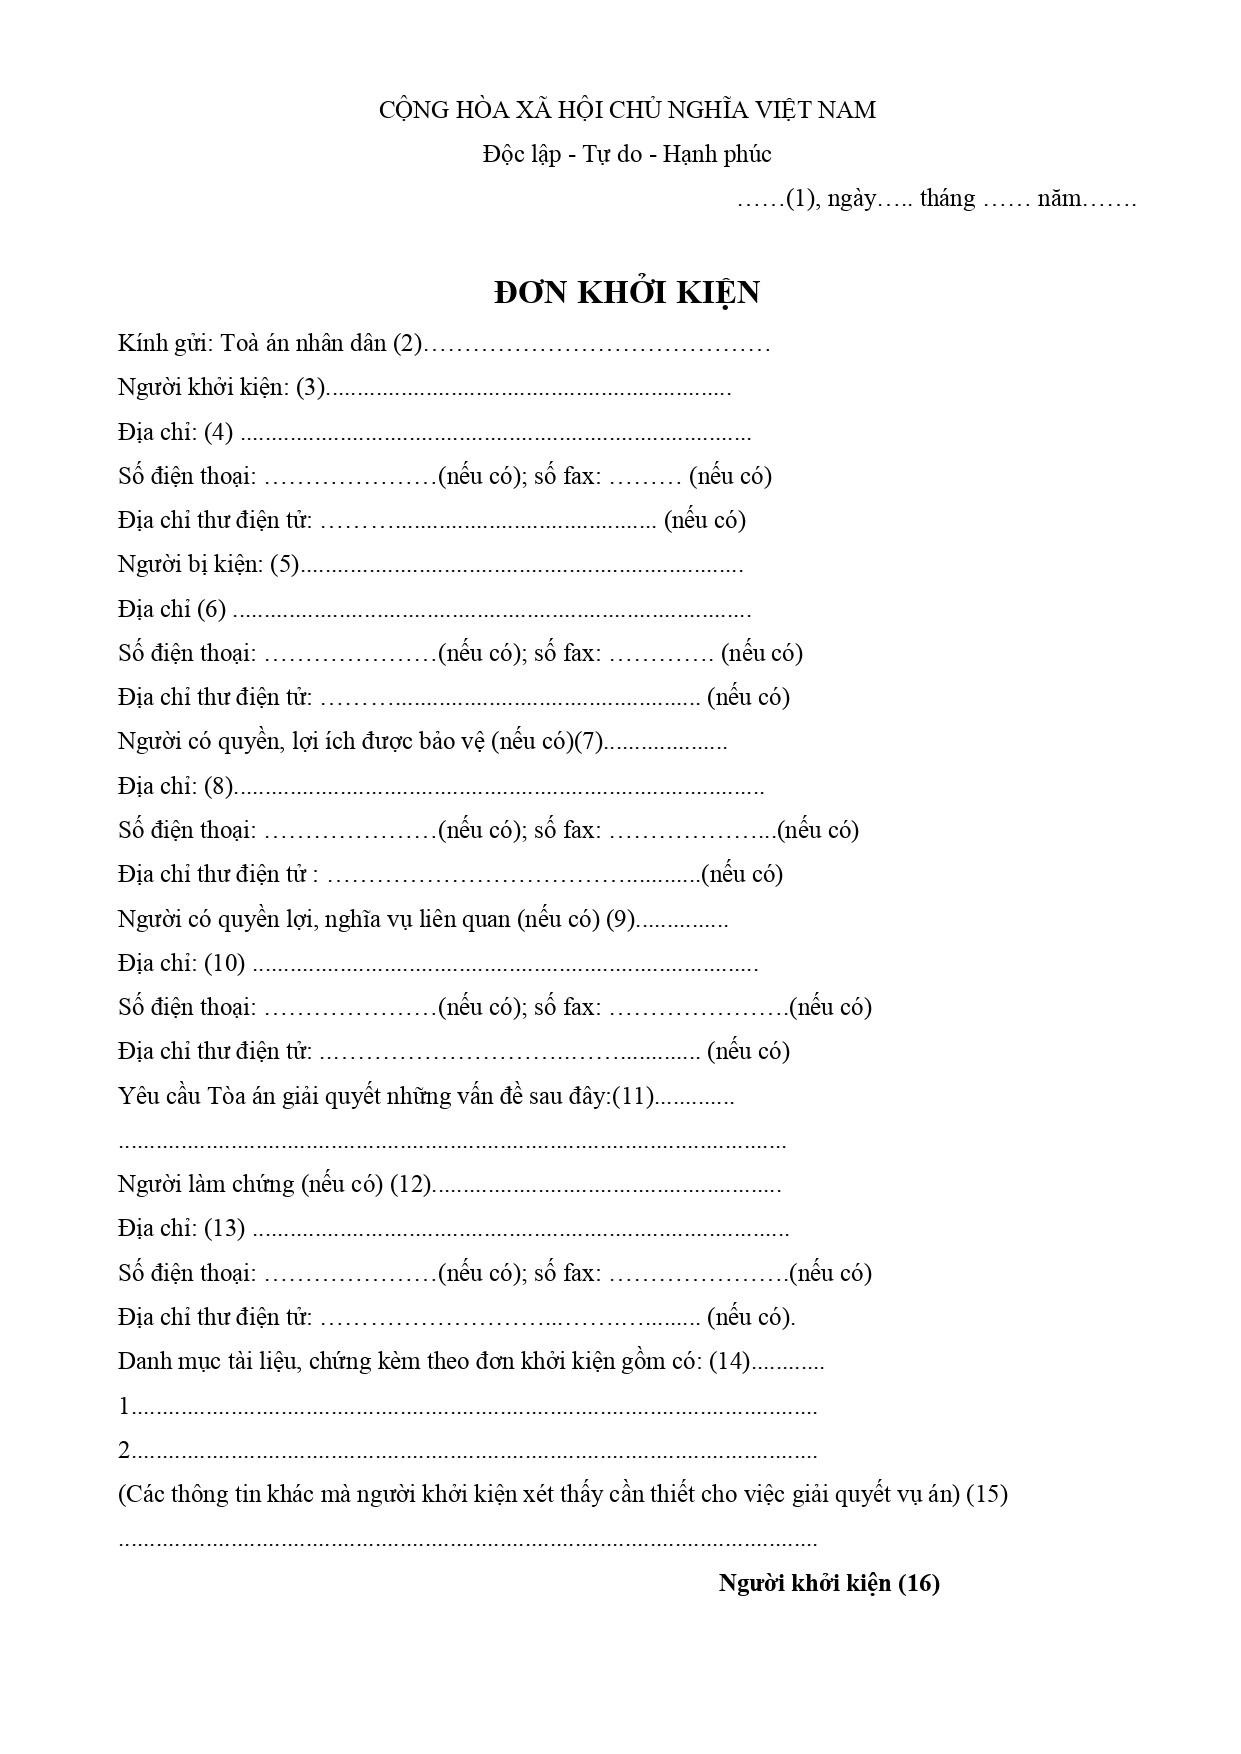 mau-so-23-ds-don-khoi-kien-page-0001